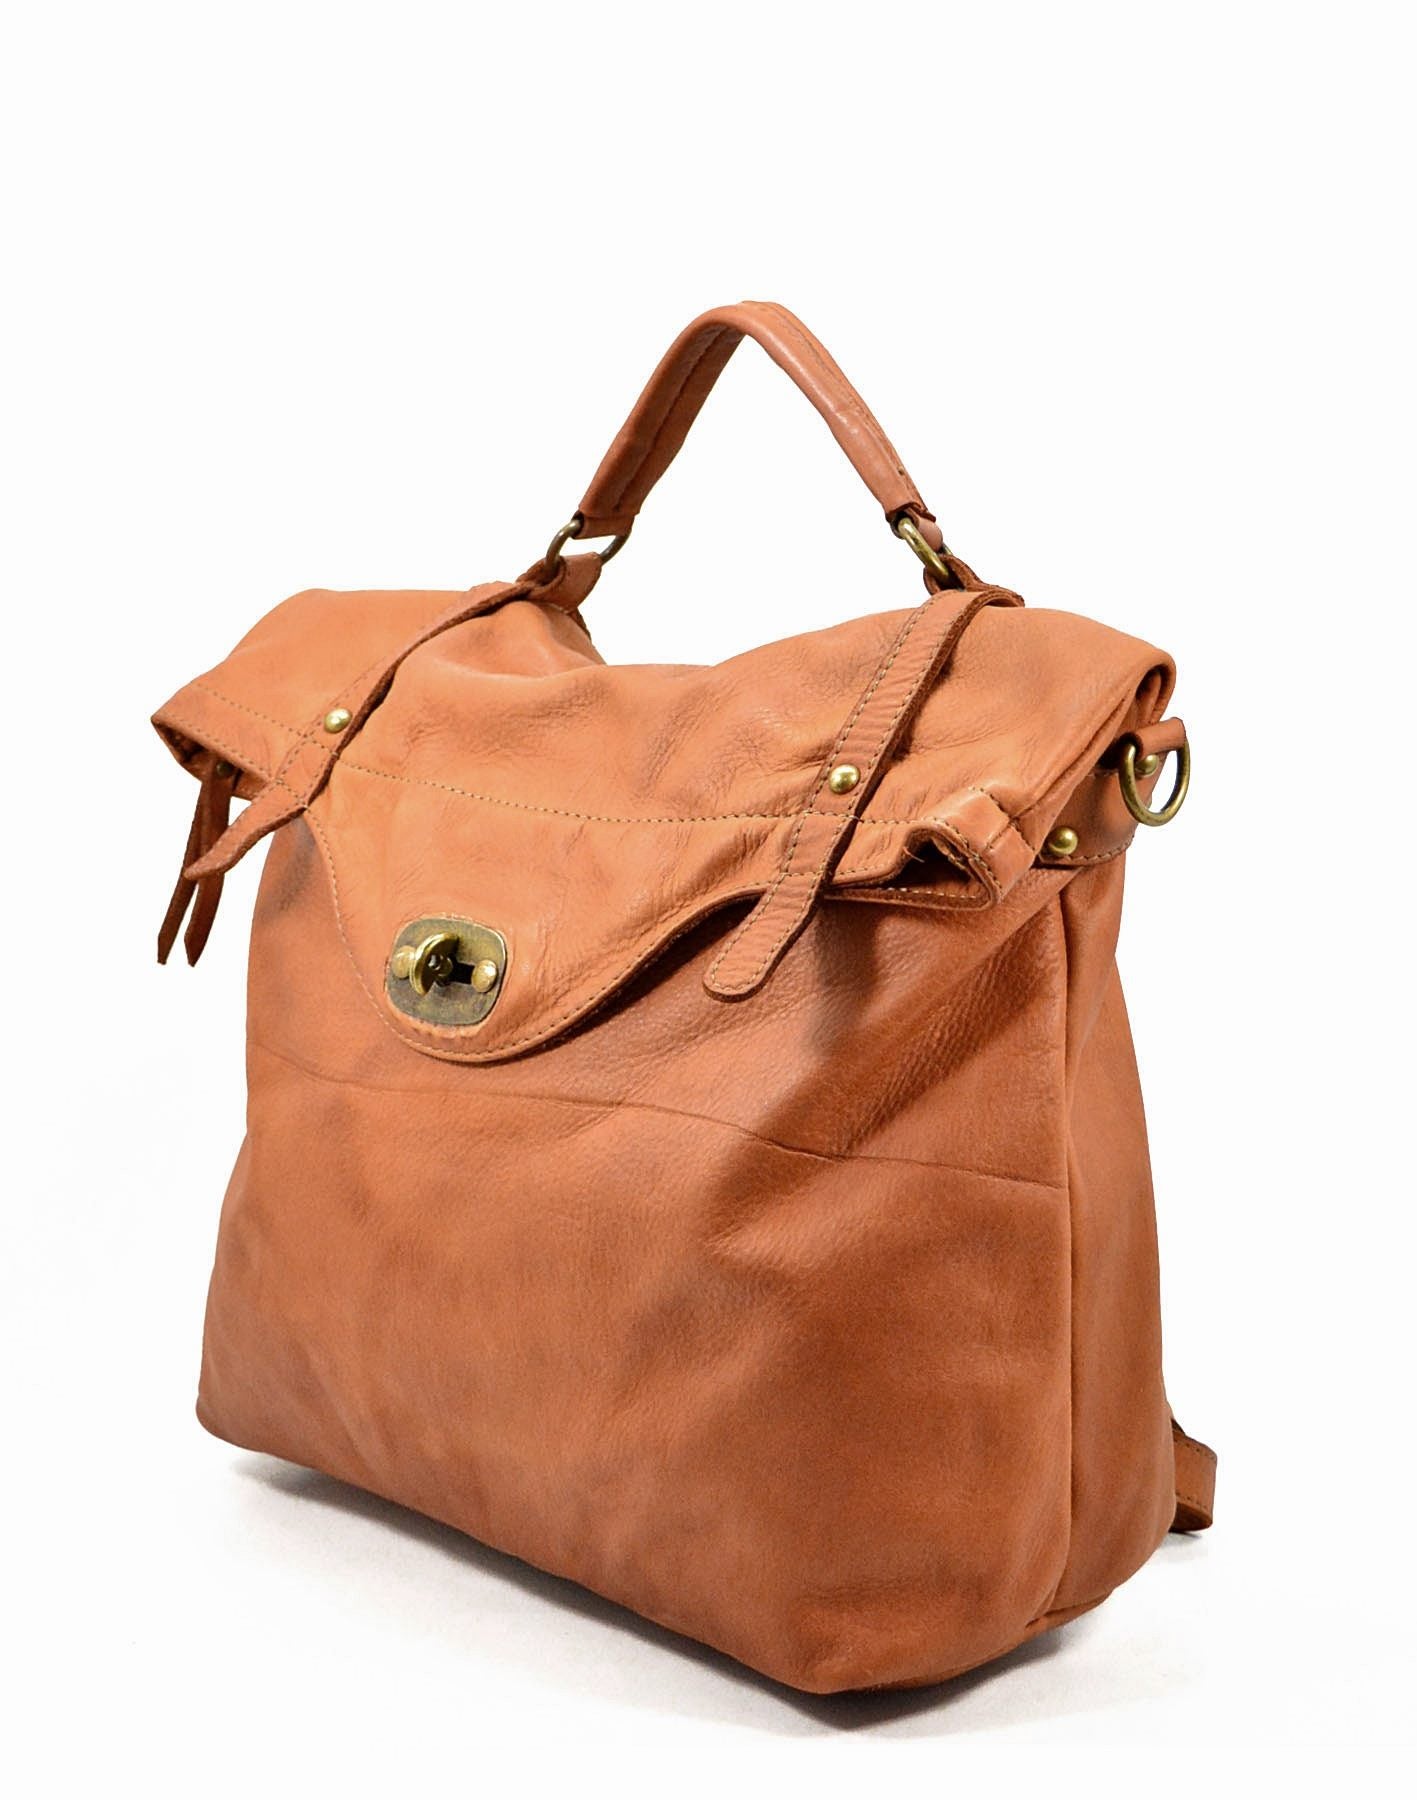 MATTINO ● Grand sac à main sac à dos vintage 3 en 1 en cuir pour homme et femme. Fabriqué en Italie